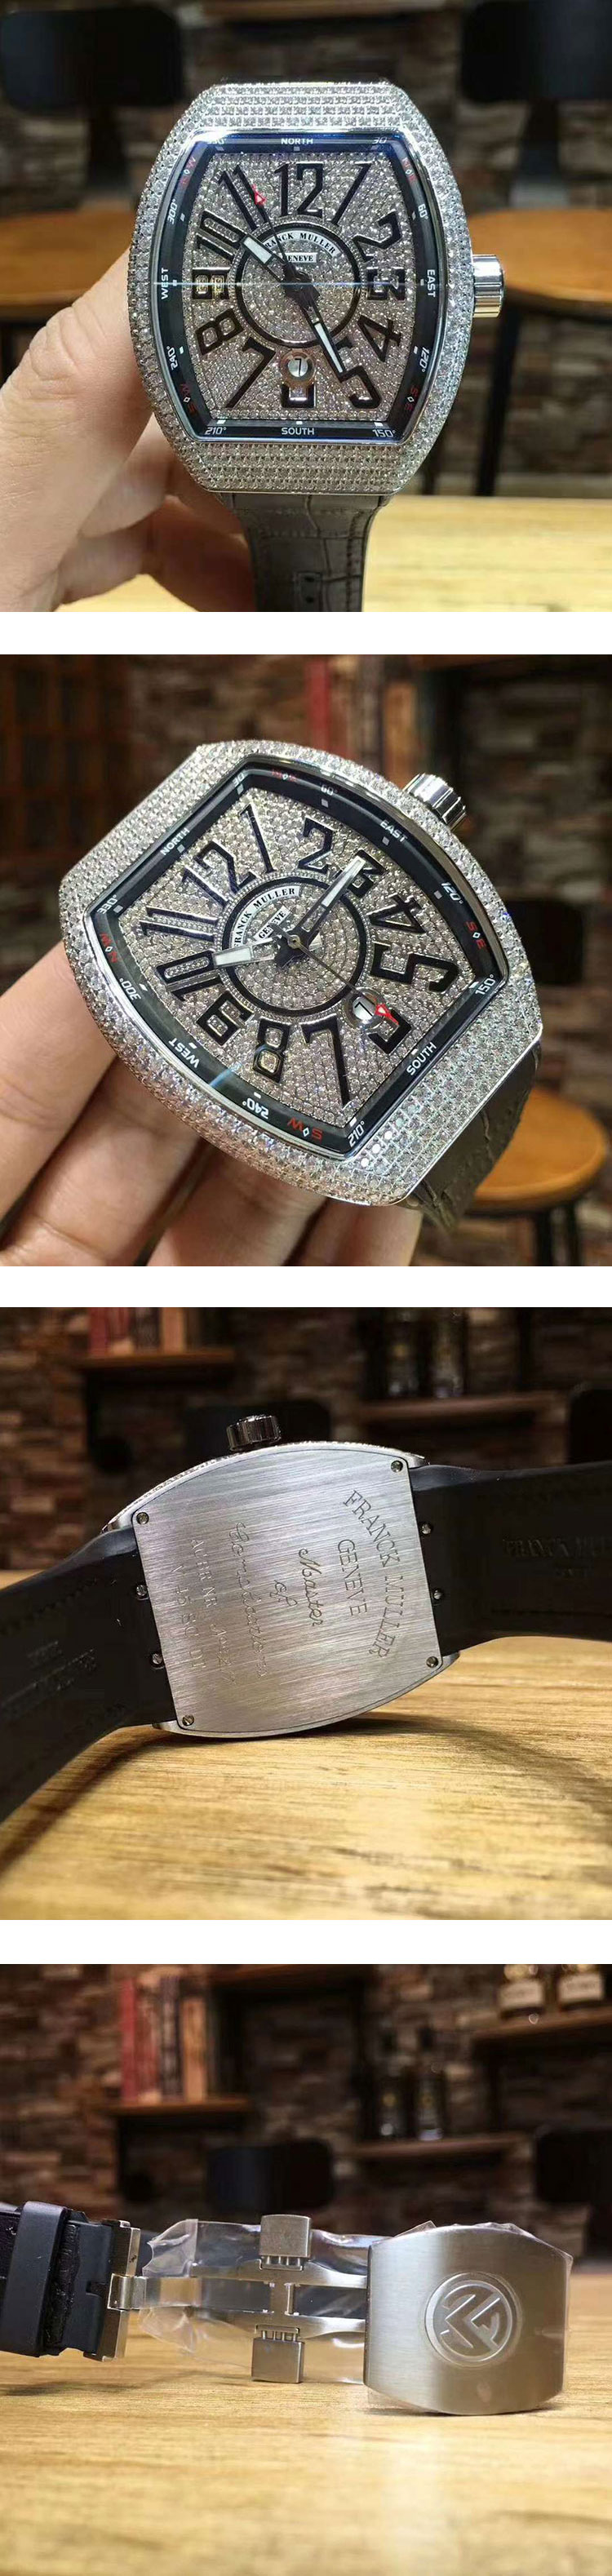 ランク･ミュラースーパーコピー腕時計日本最完璧 ヴァンガード V45SCDTDCD